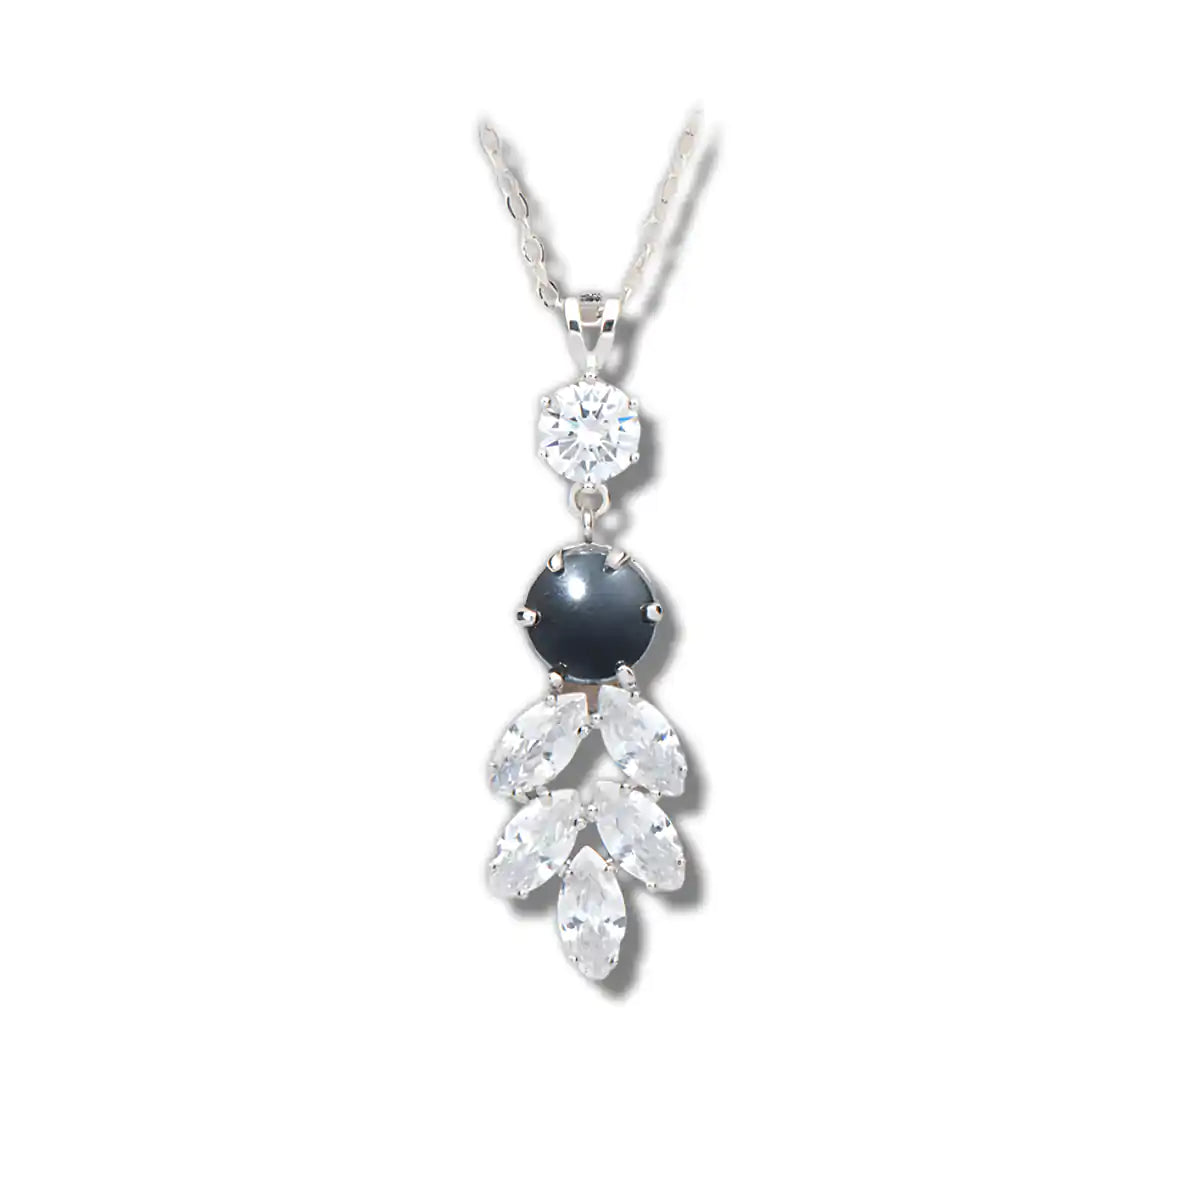 Hematite crystal garden necklace